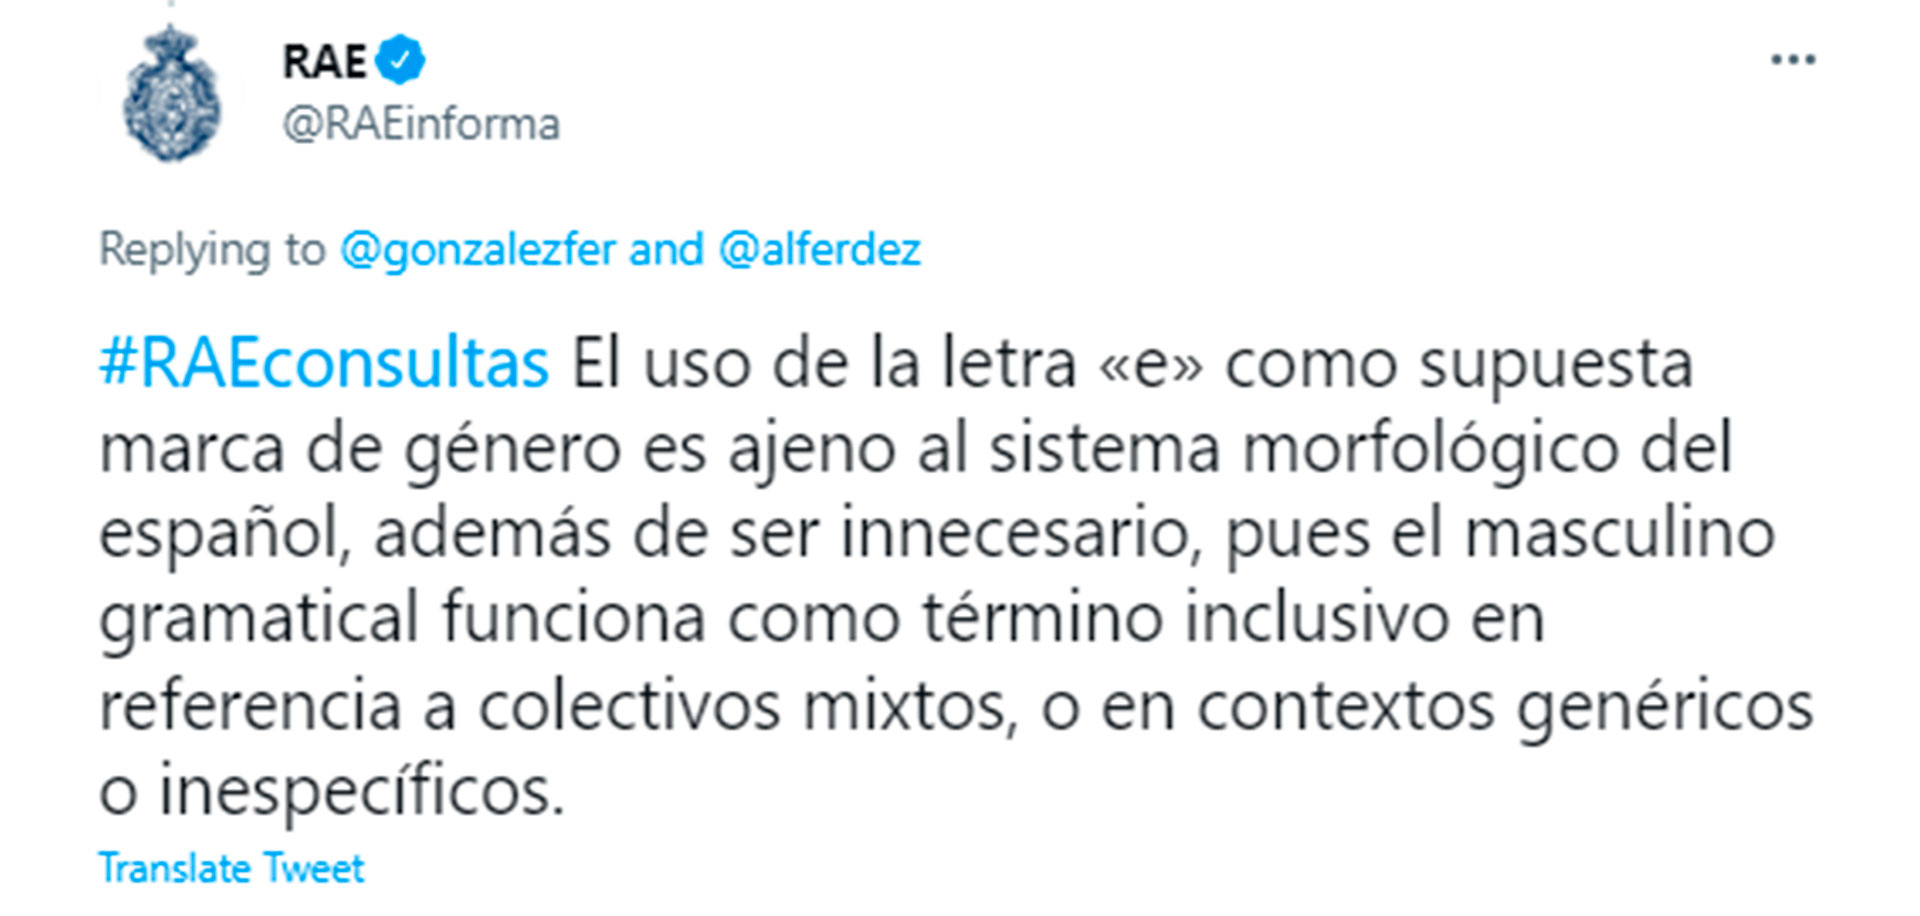 La corrección de la RAE a la expresión de Alberto Fernández en lenguaje inclusivo